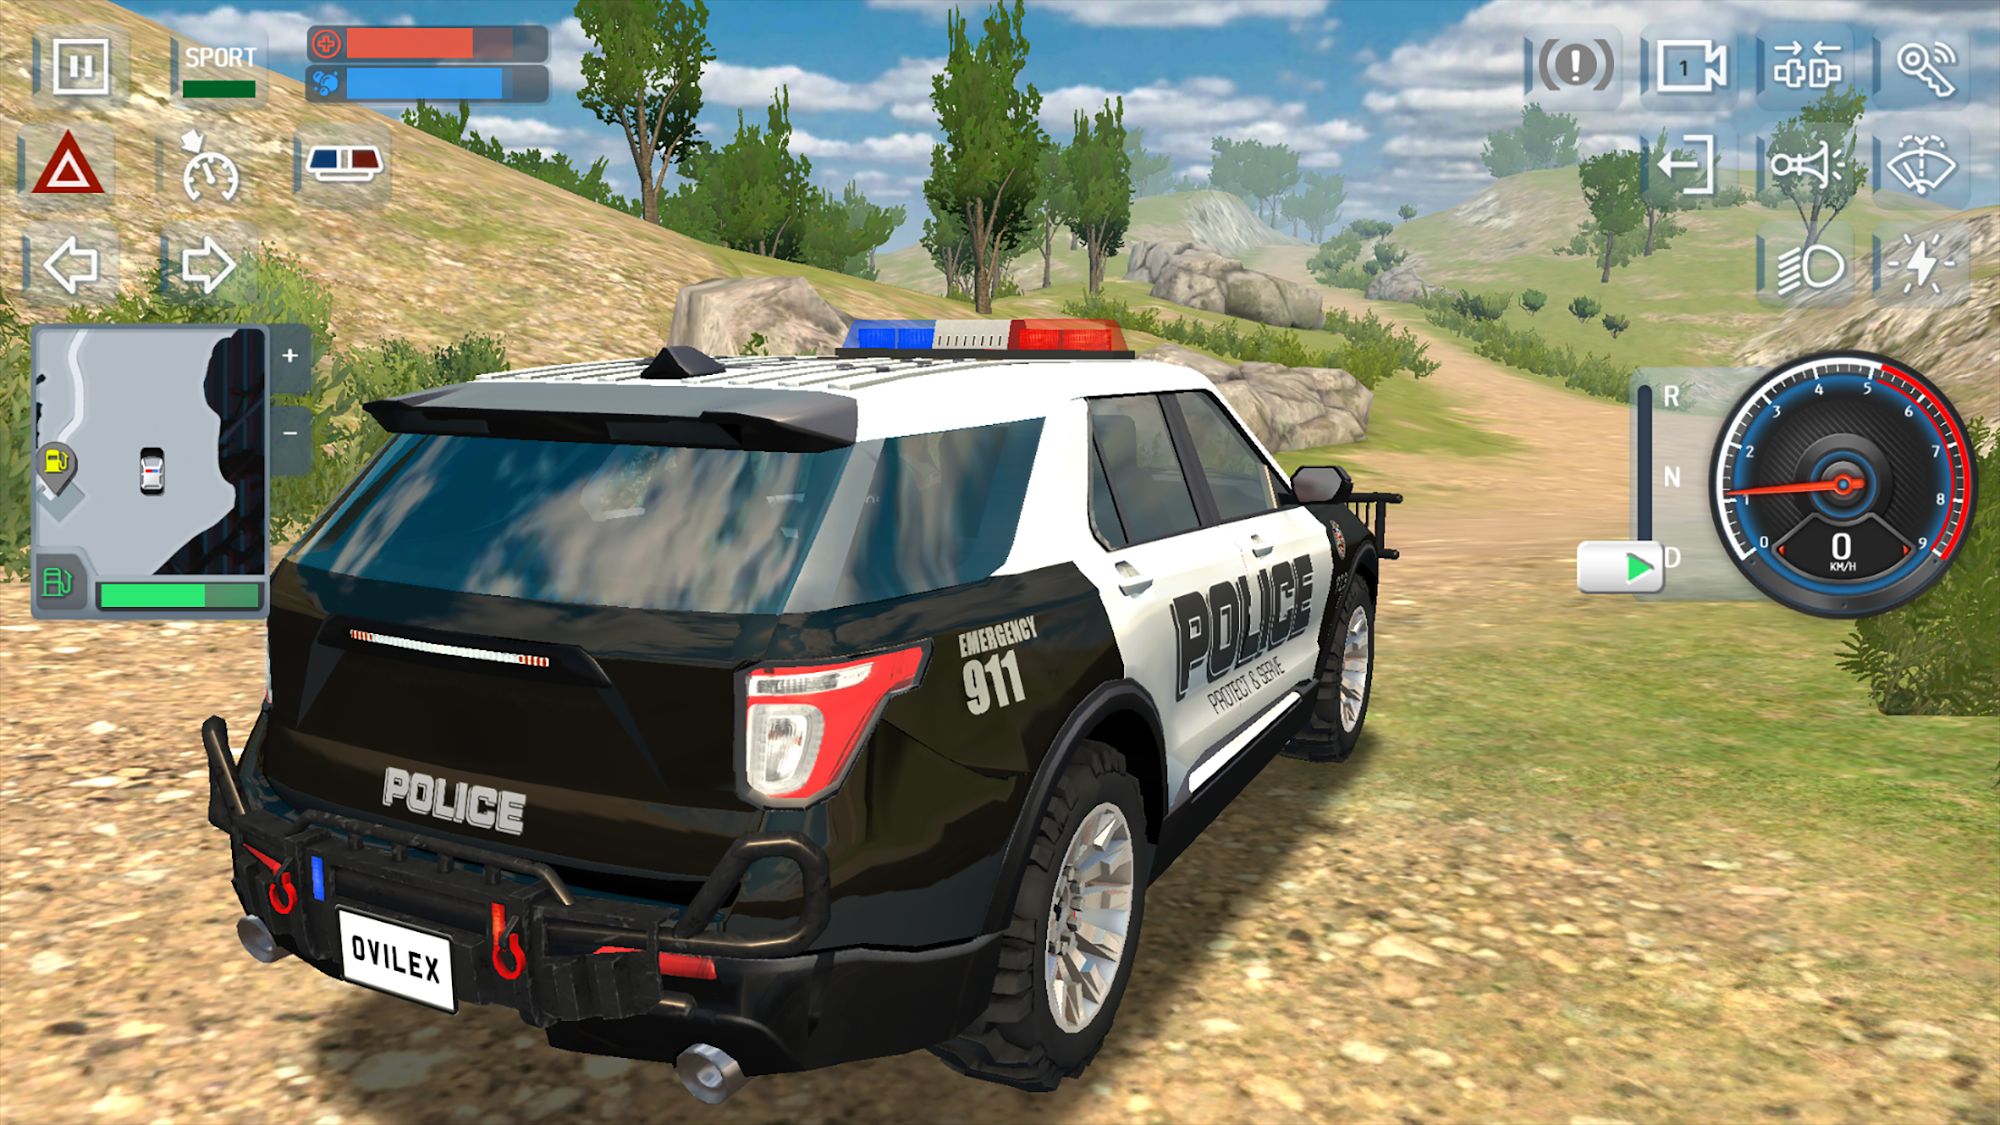 Download do APK de jogo de carro de policia para Android